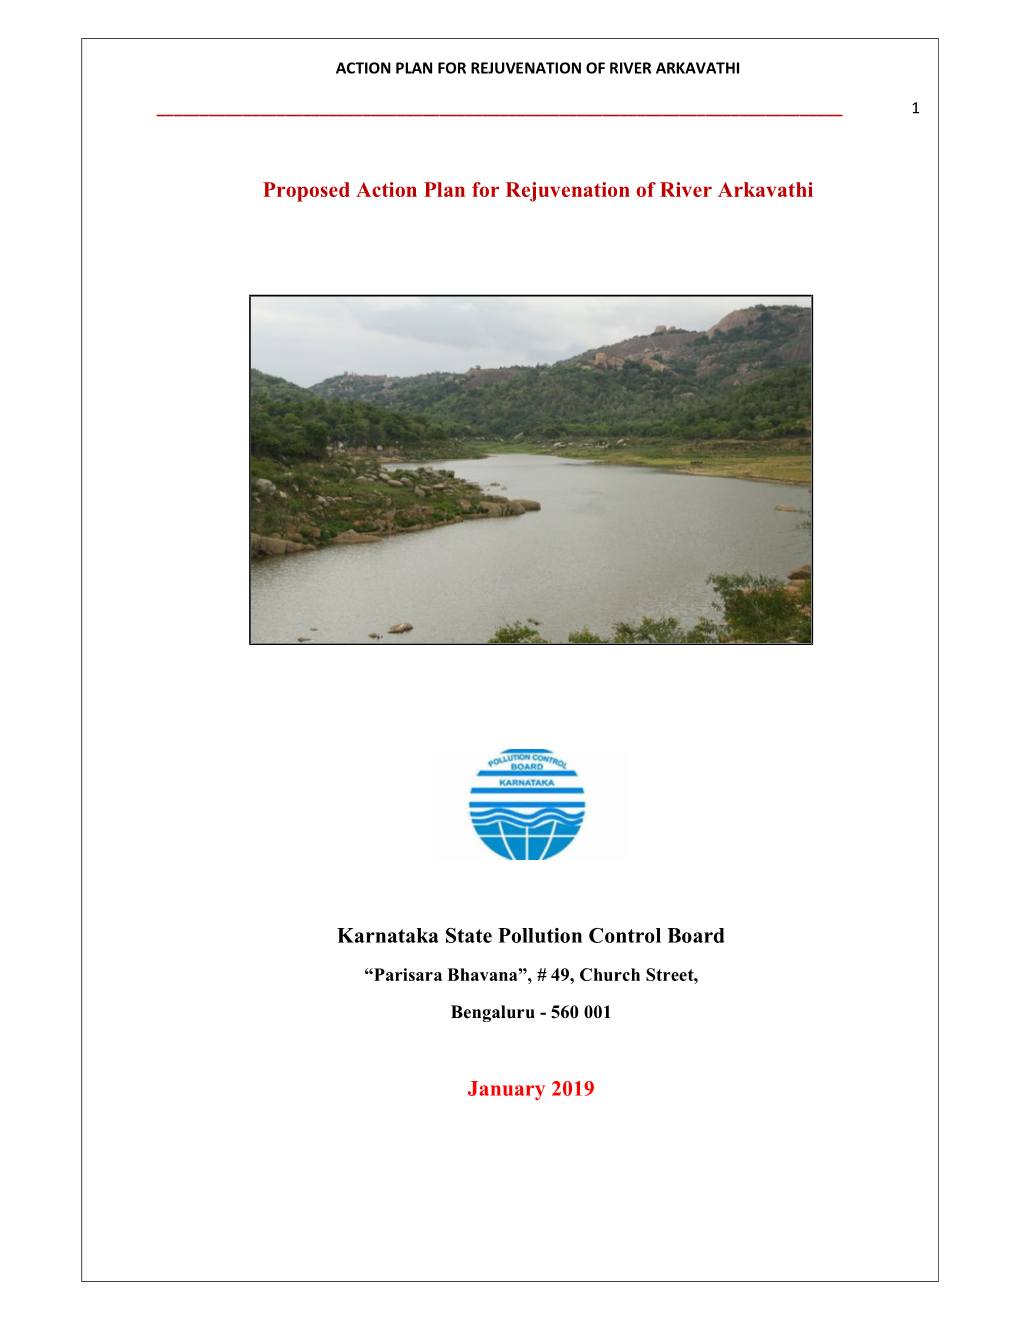 Proposed Action Plan for Rejuvenation of River Arkavathi